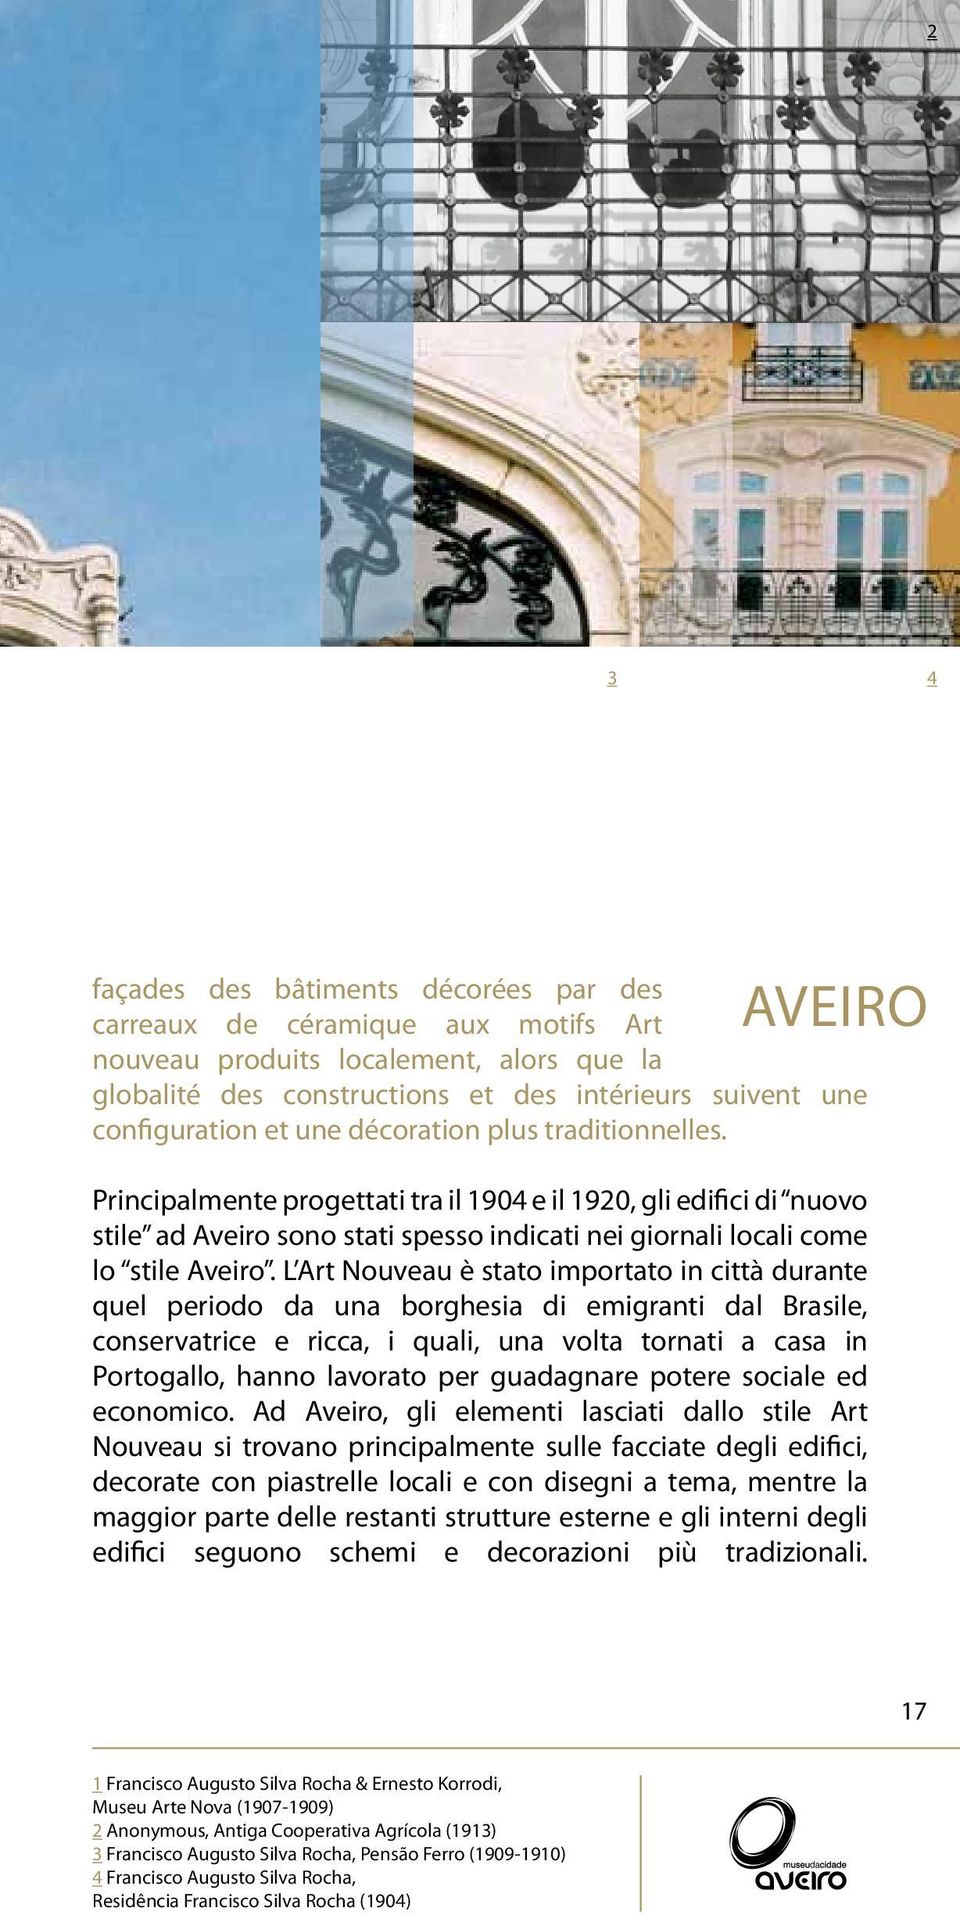 Principalmente progettati tra il 1904 e il 1920, gli edifici di nuovo stile ad Aveiro sono stati spesso indicati nei giornali locali come lo stile Aveiro.